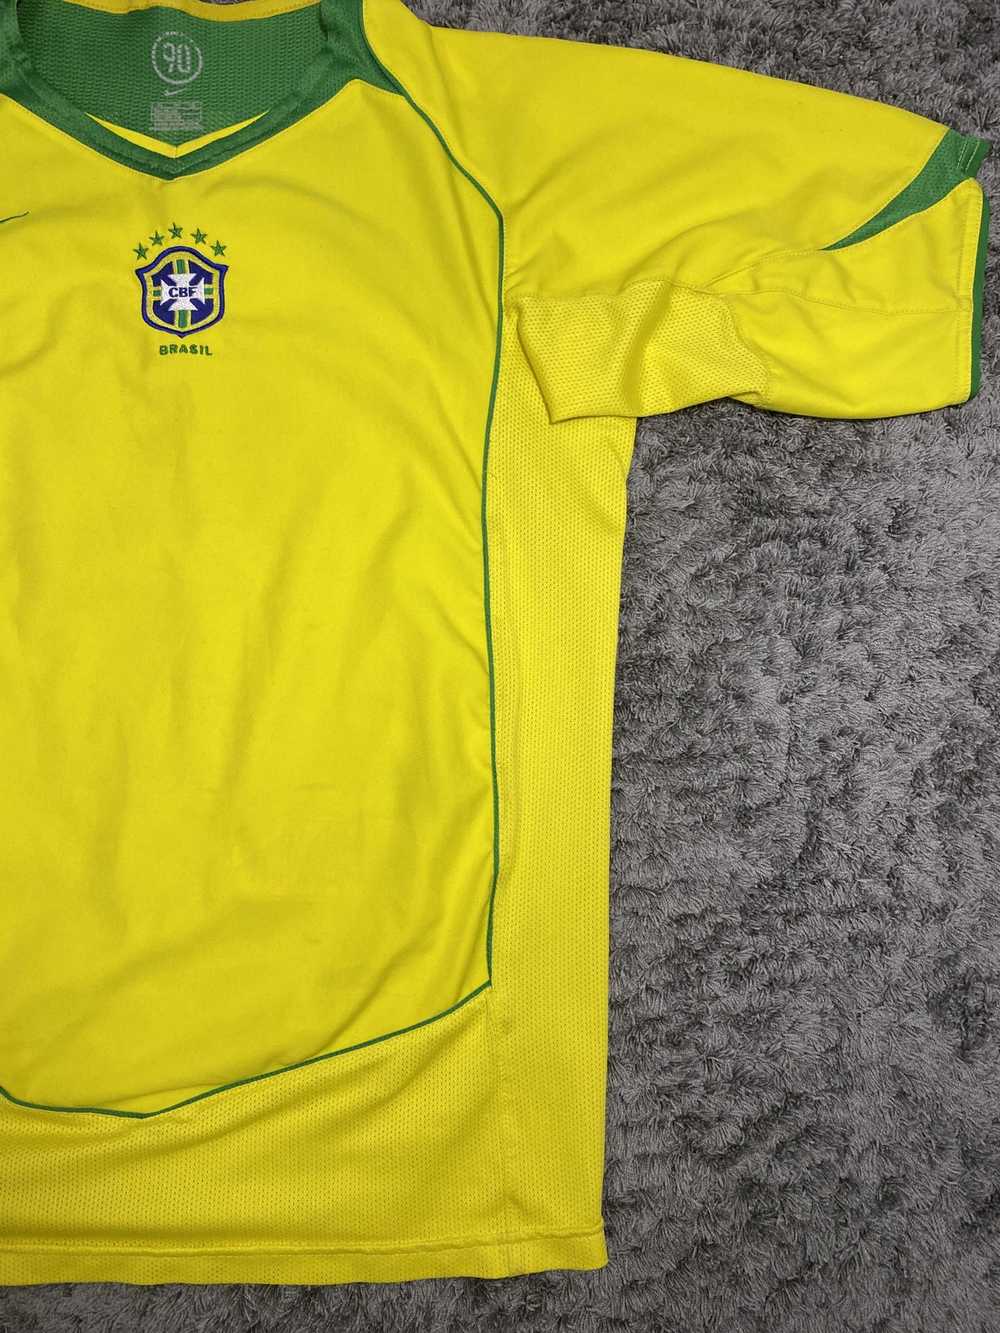 Rivaldo brasil jersey 2002 - Gem